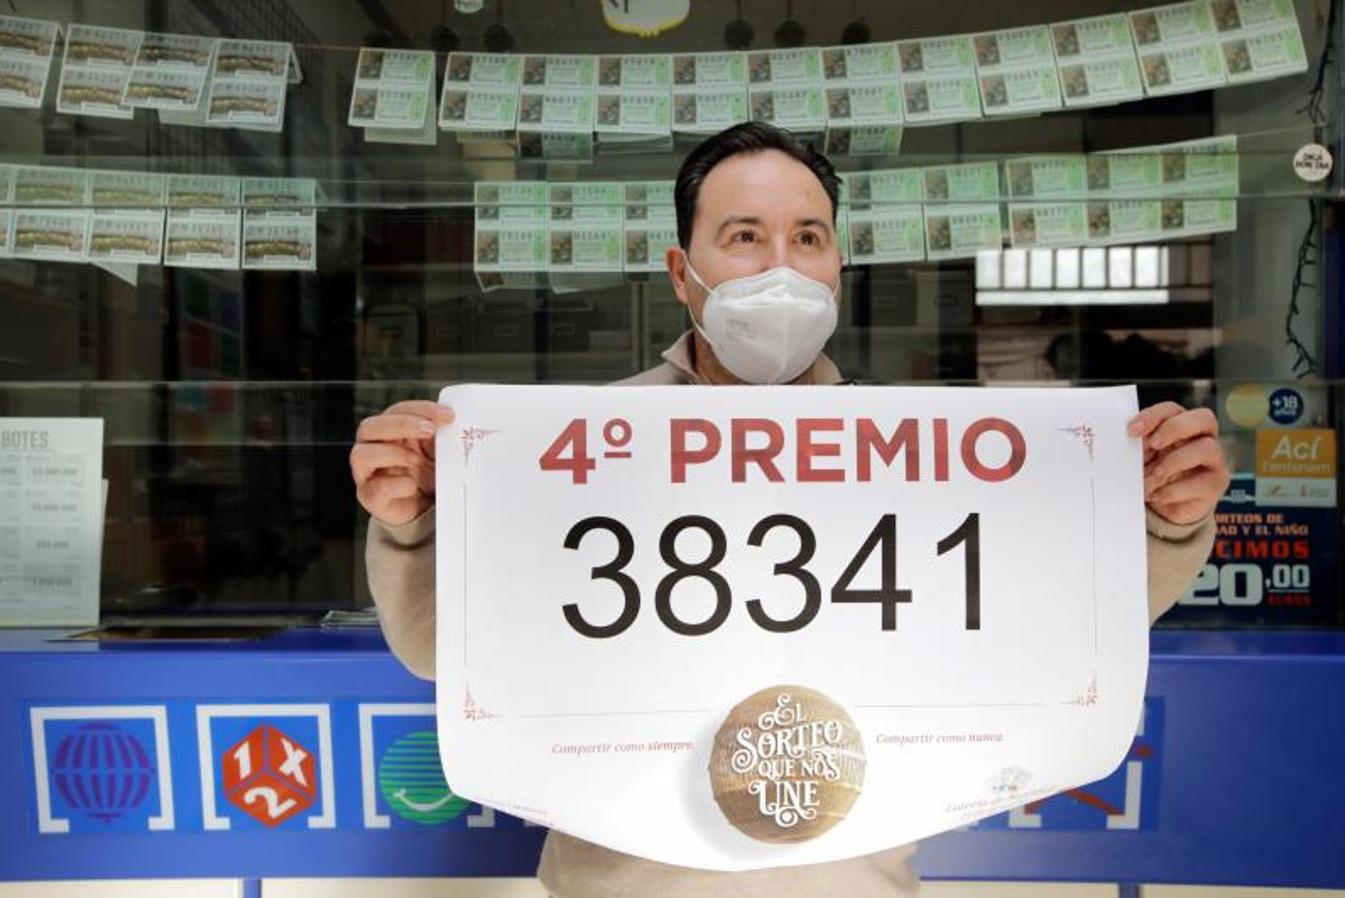 El 38.341, el segundo cuarto premio, ha repartido 14 millones de euros repartidos entre las poblaciones de Faura, Meliana y Almàssera, las tres poblaciones en la provincia de Valencia.